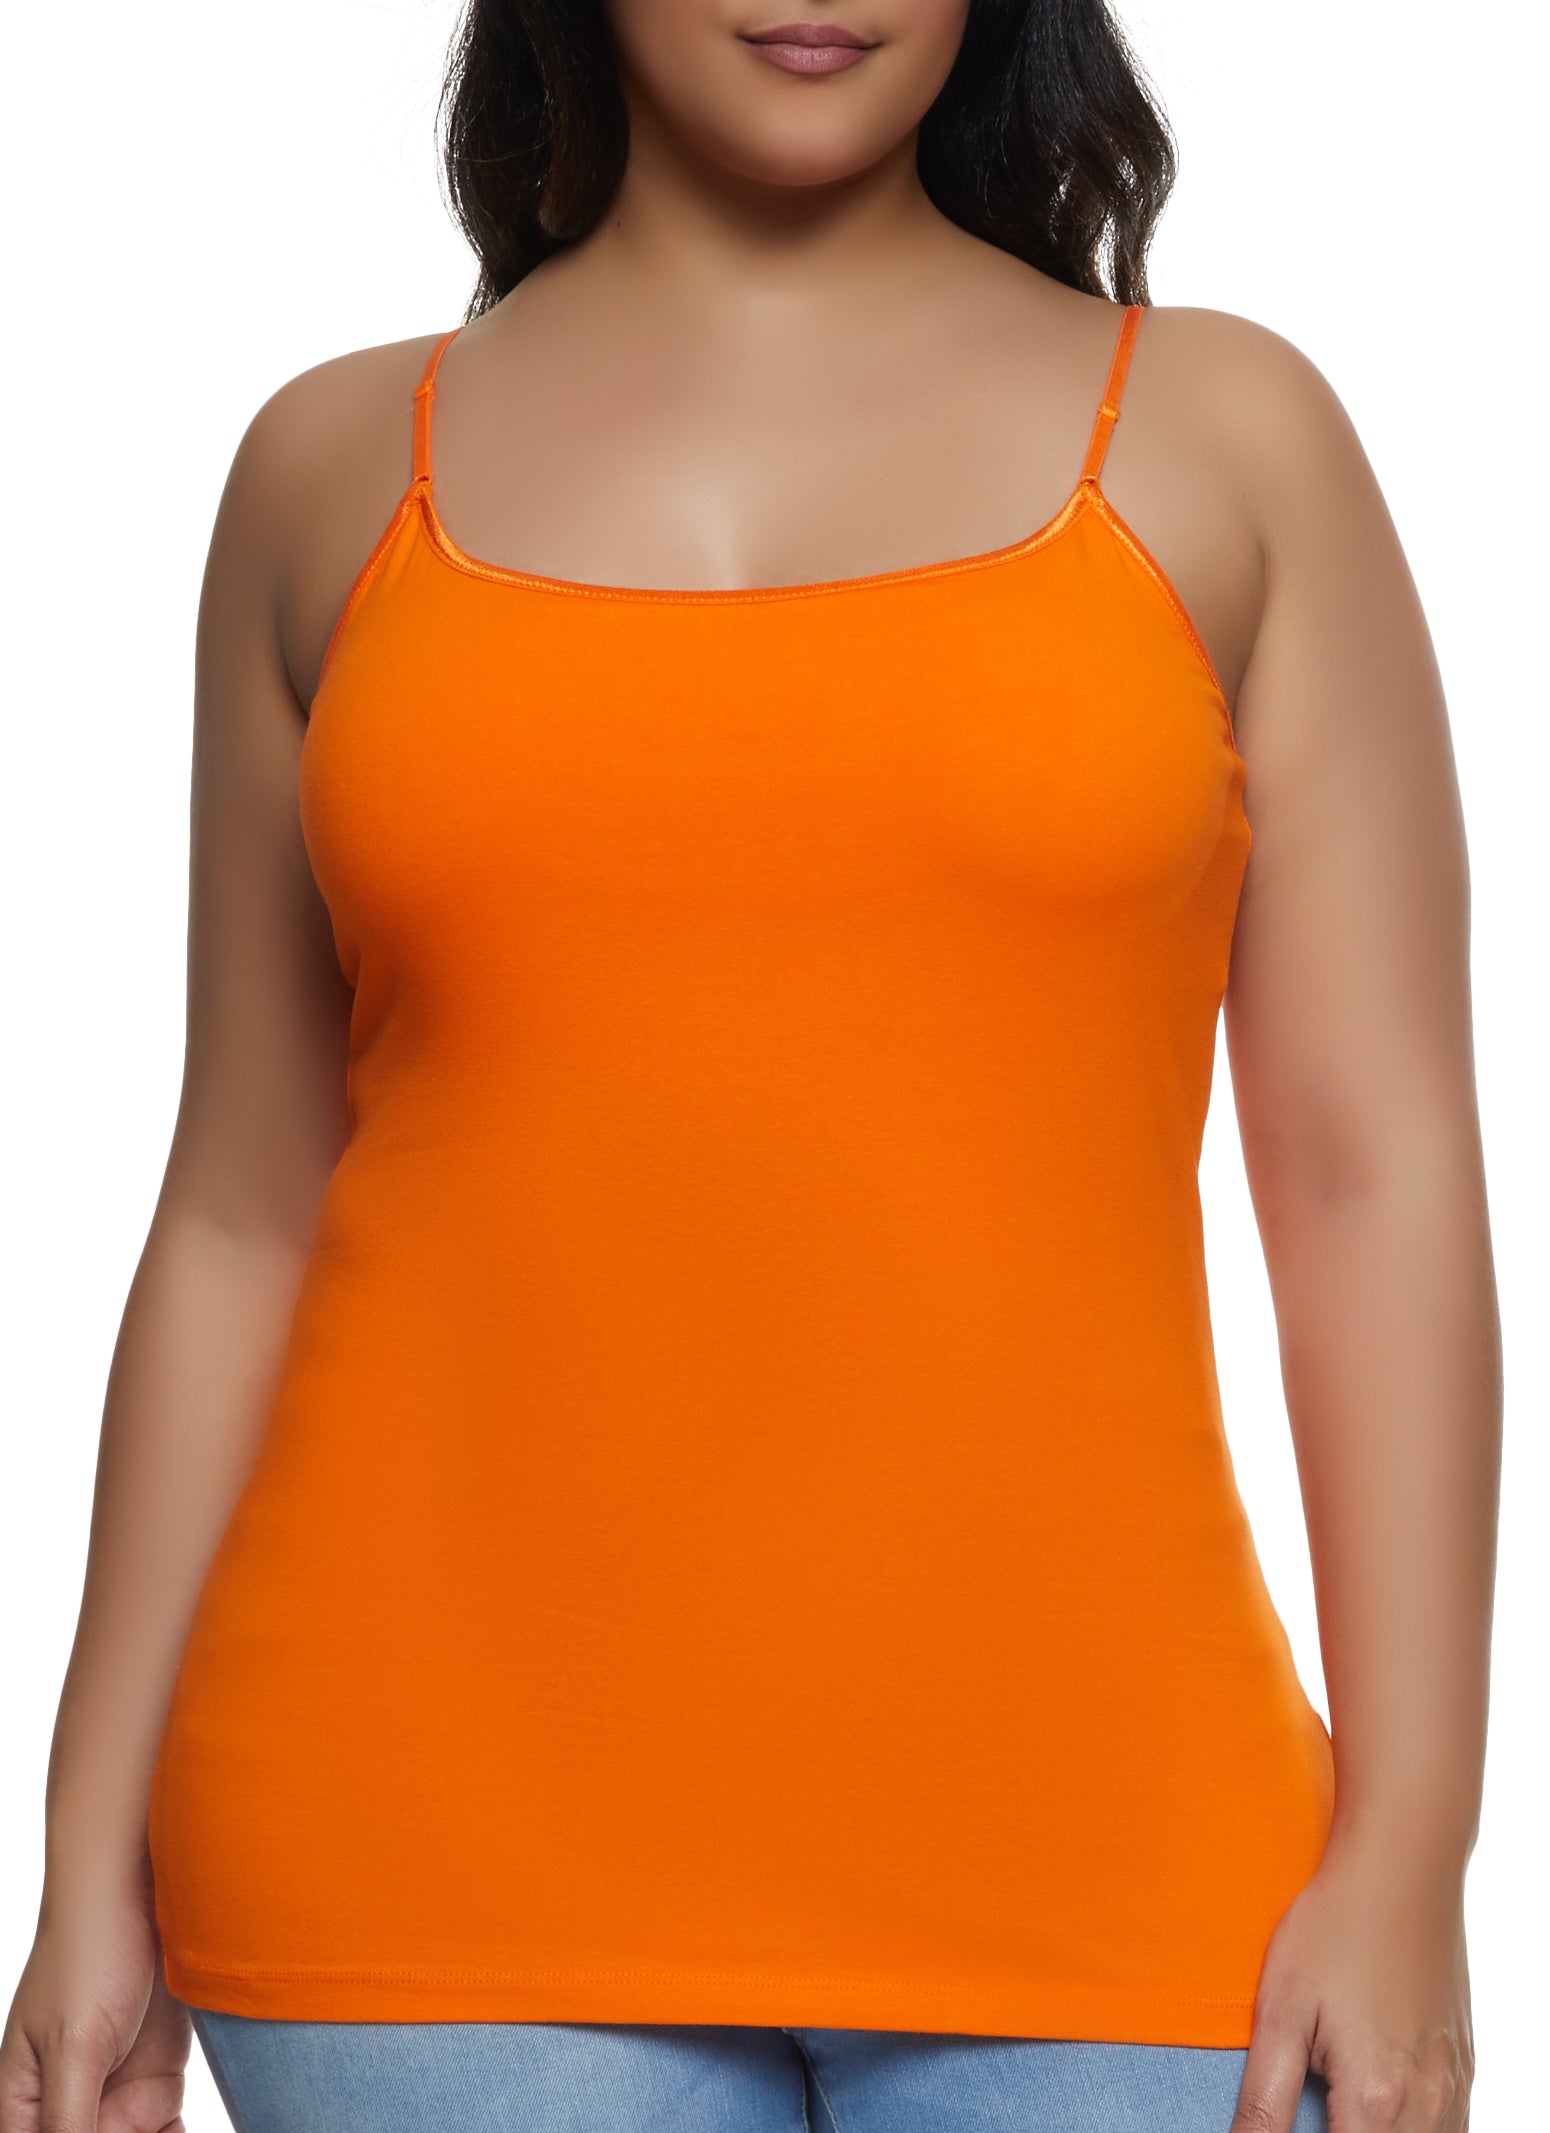 Solid Shelf Bra Cami - Orange